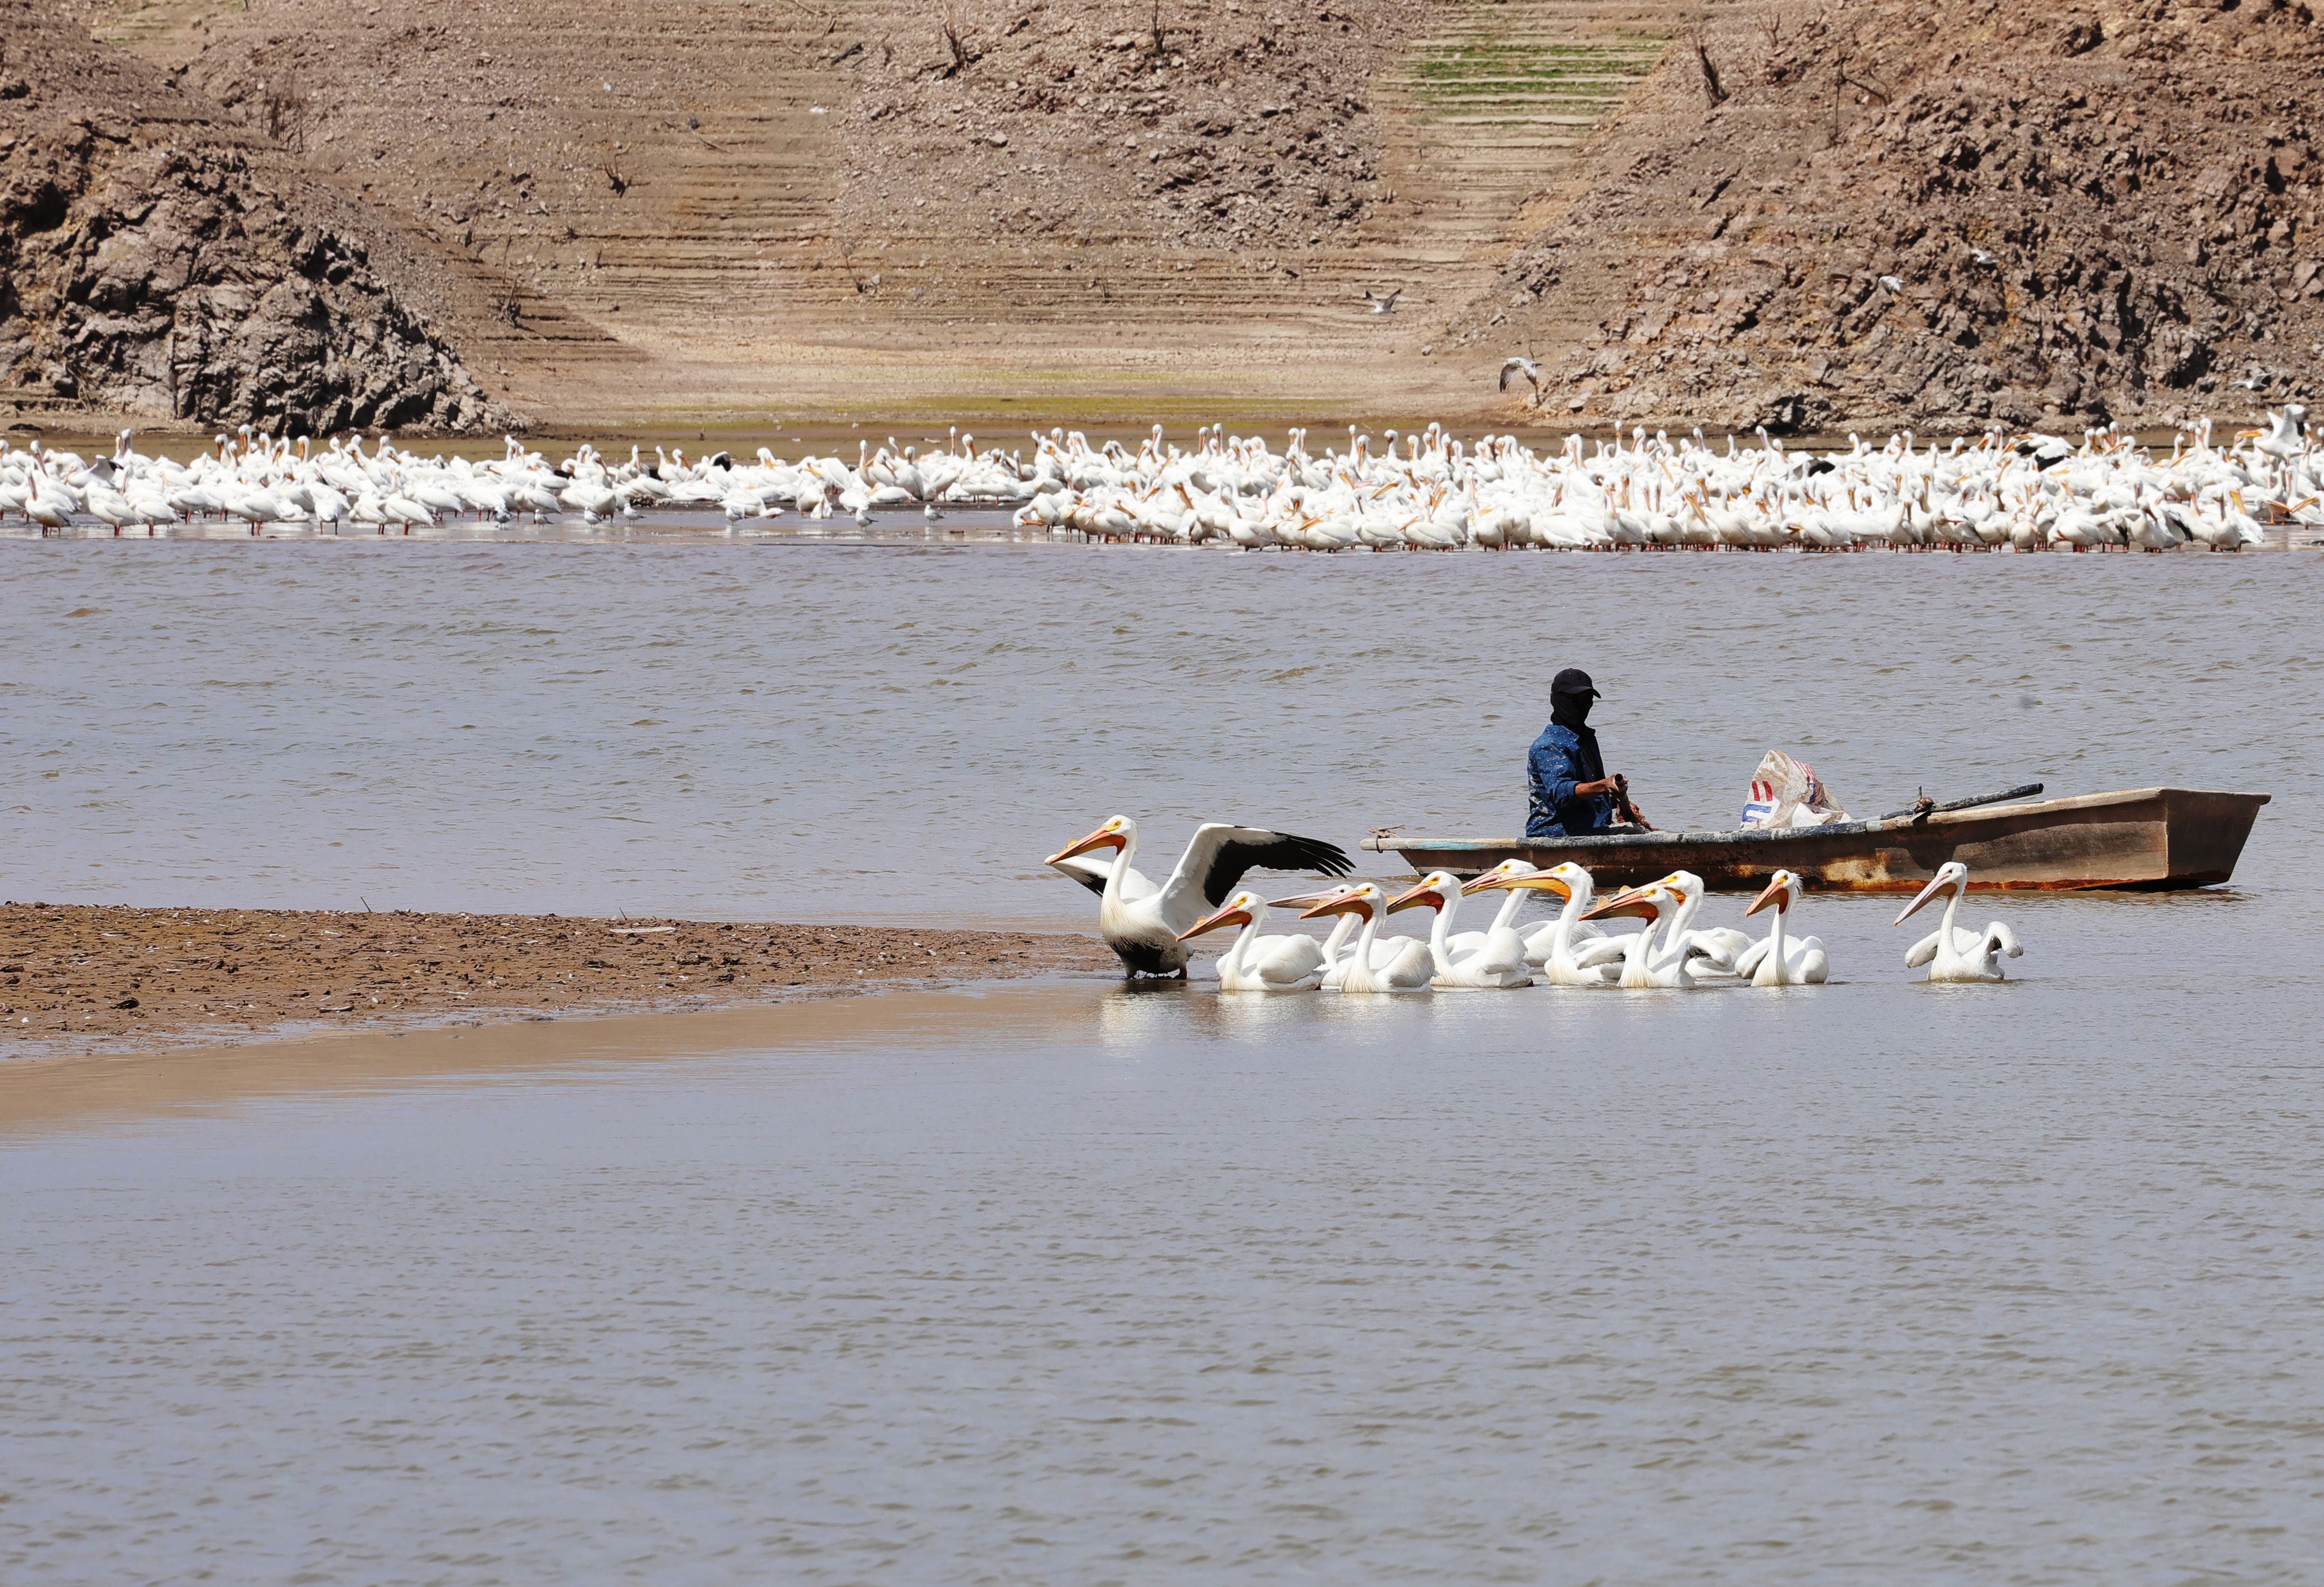 En la poca agua que queda en algunas partes de la presa “El Mocúzari”, pescadores extraen lo poco que queda de peces, compitiendo con las
aves que acuden a alimentarse.